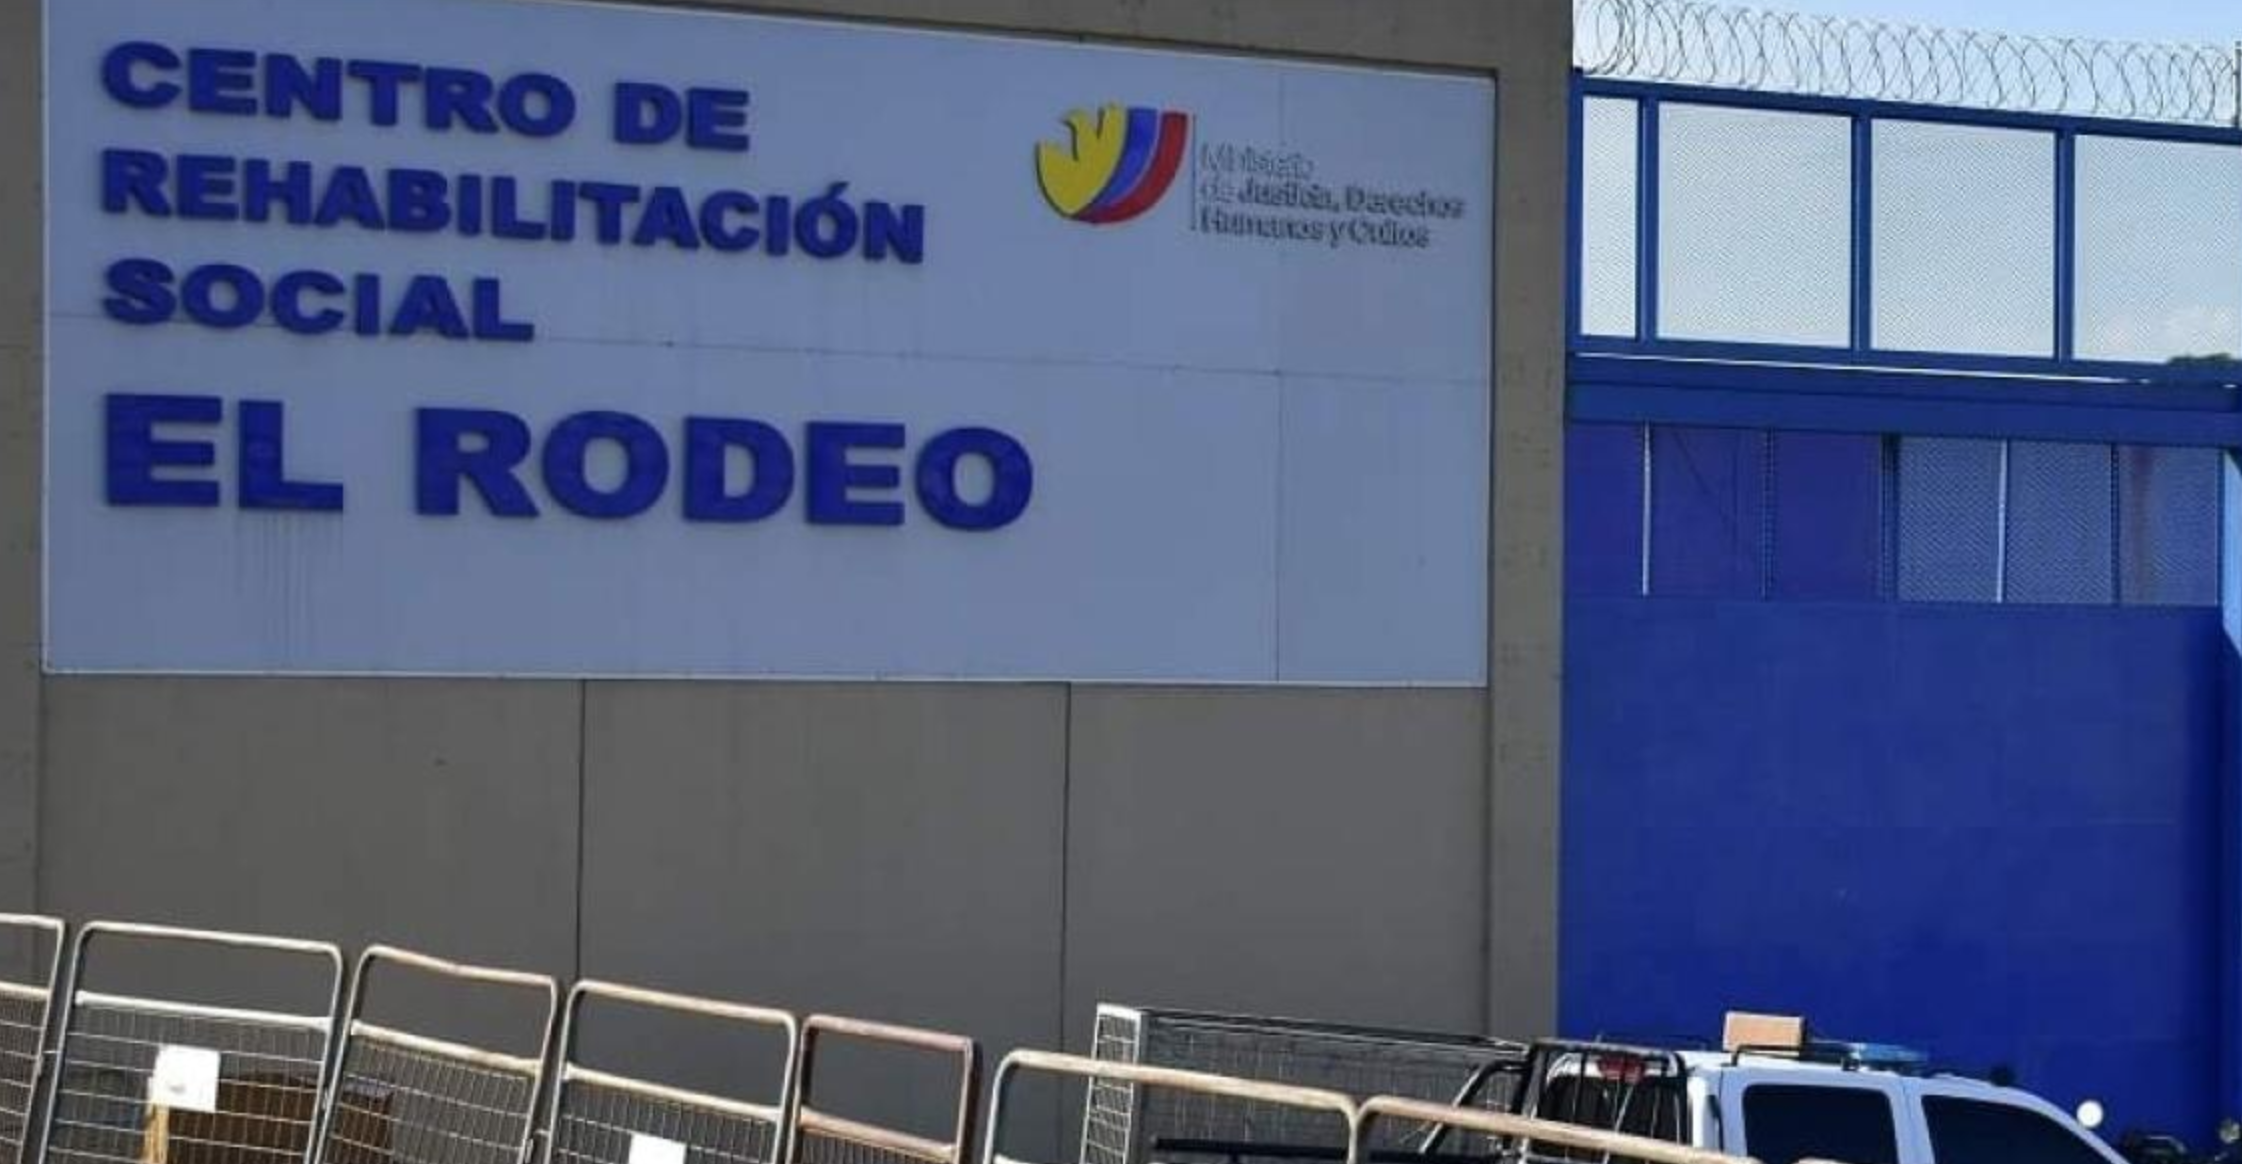 Four inmates found dead in Ecuador's El Rodeo prison